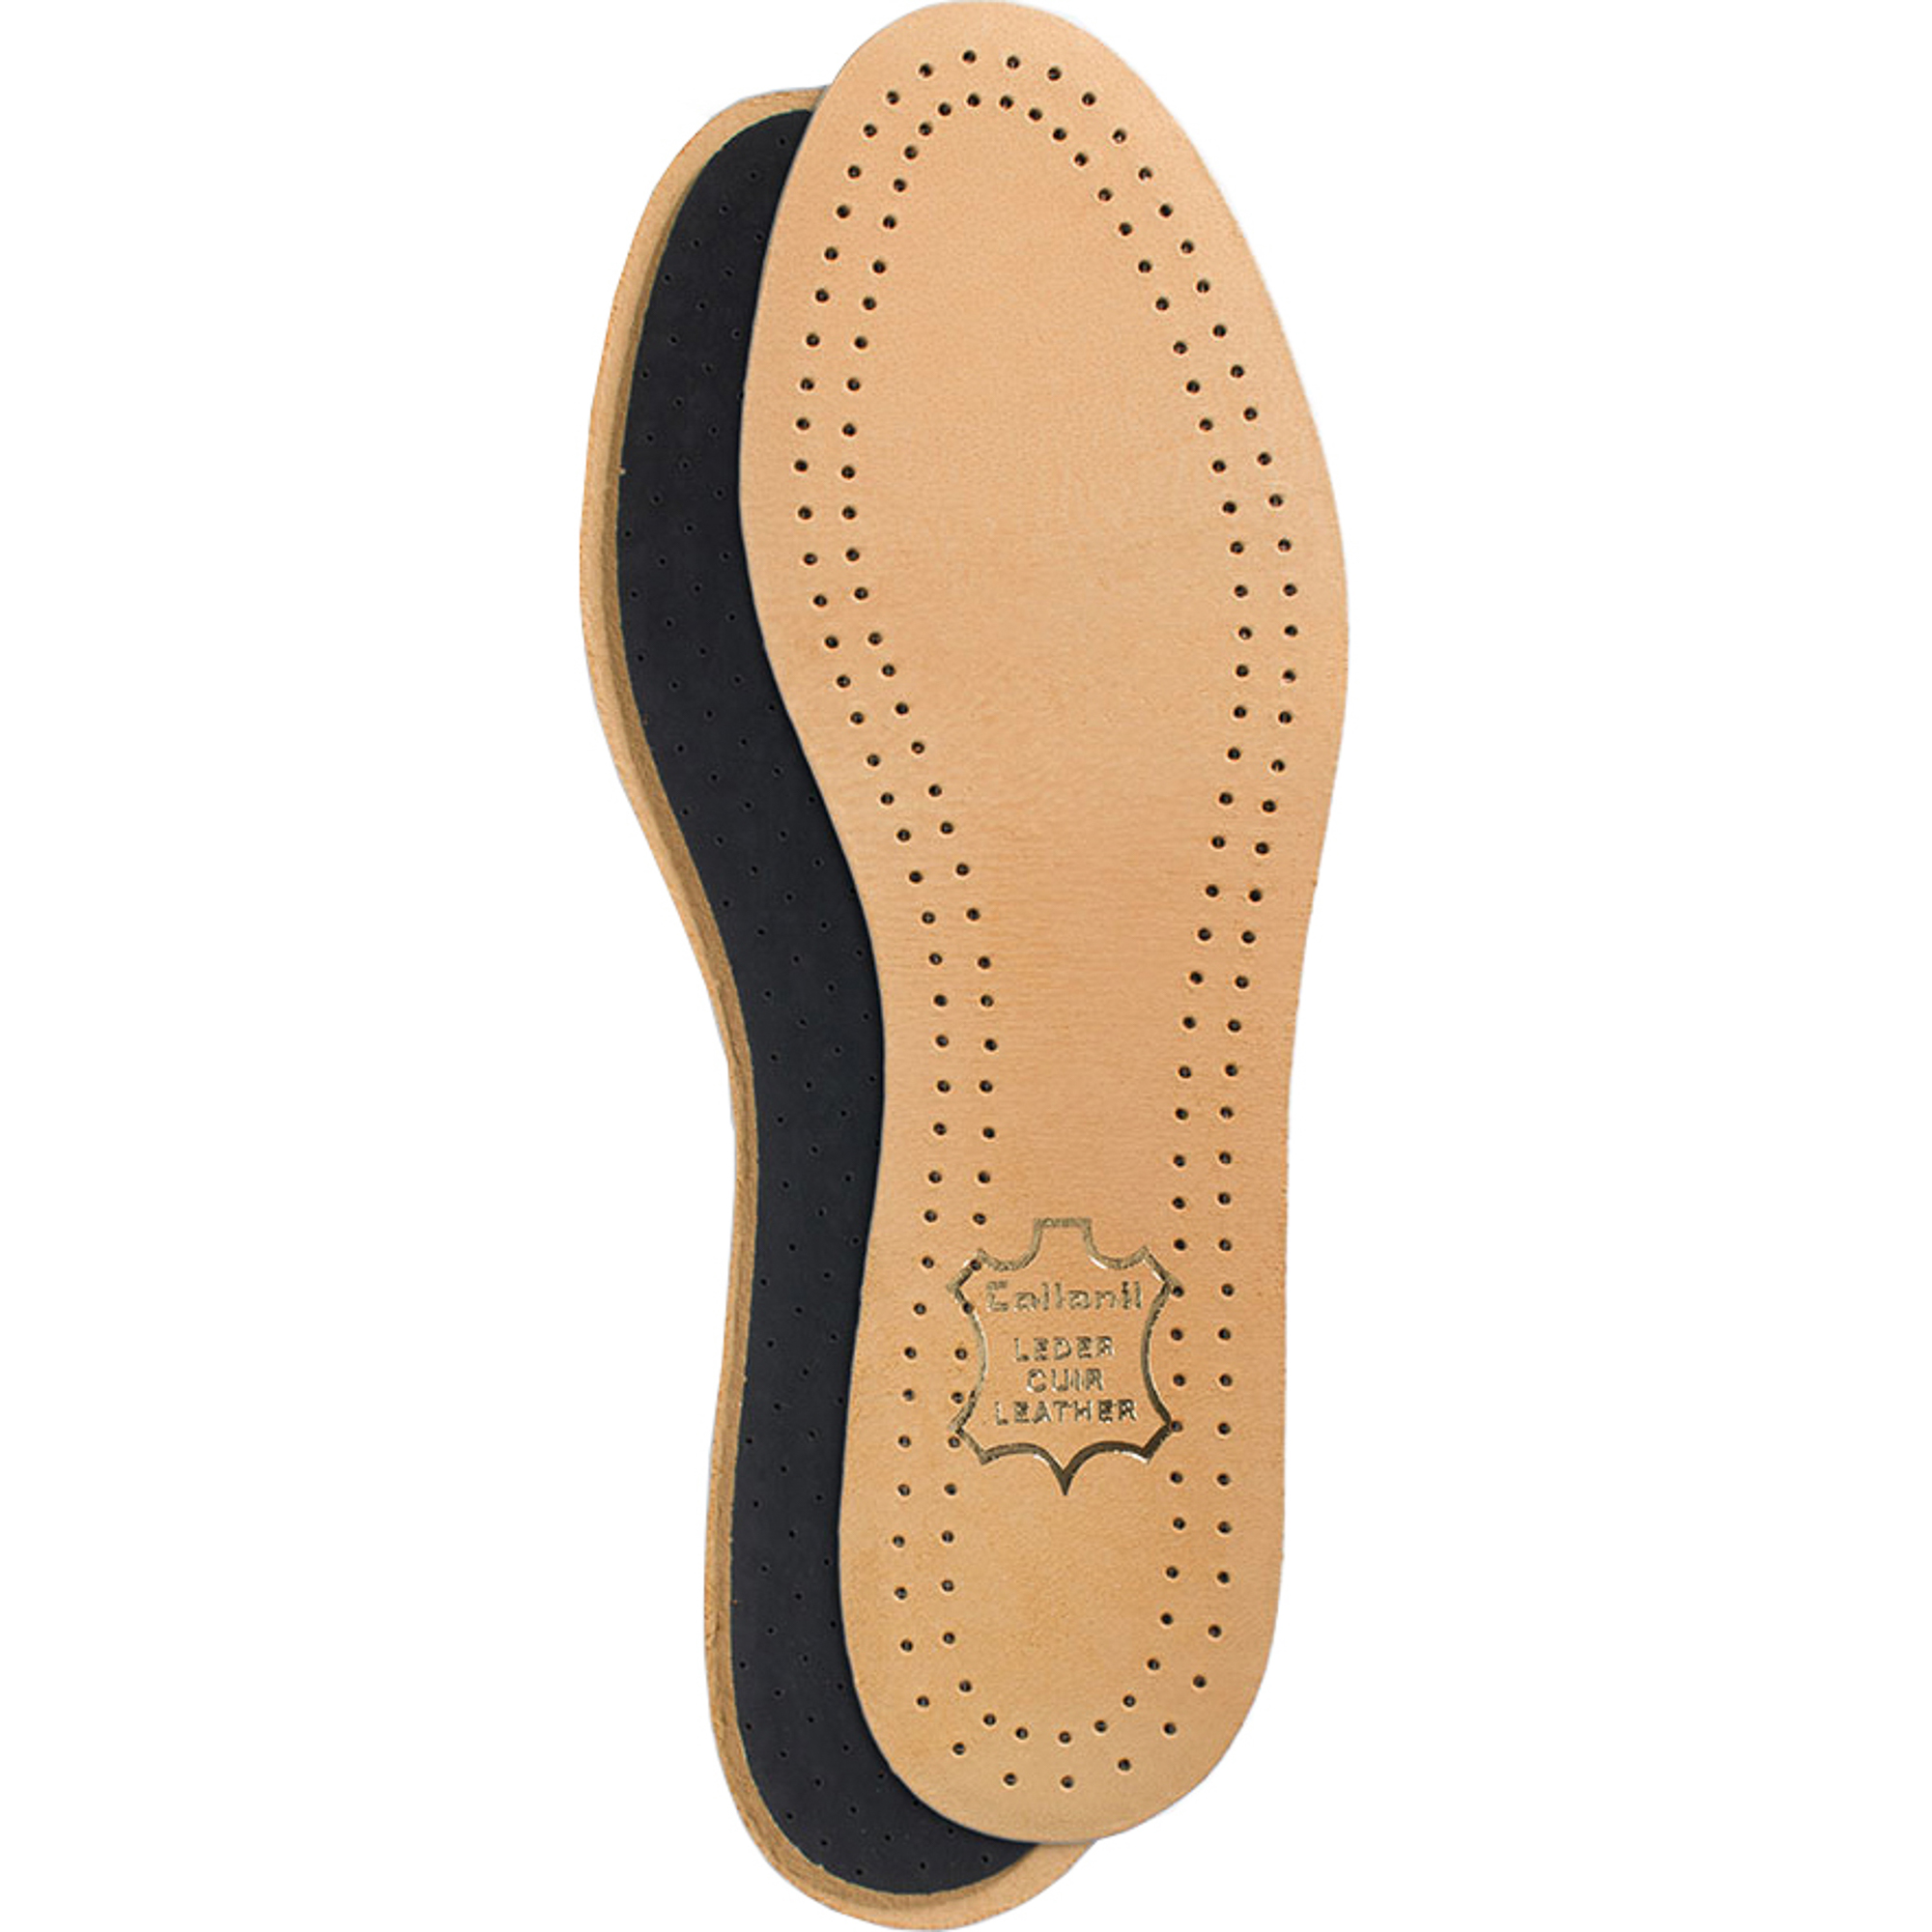 Стельки для обуви Collonil Luxor размер 37 стельки scholl gelactiv для открытой обуви